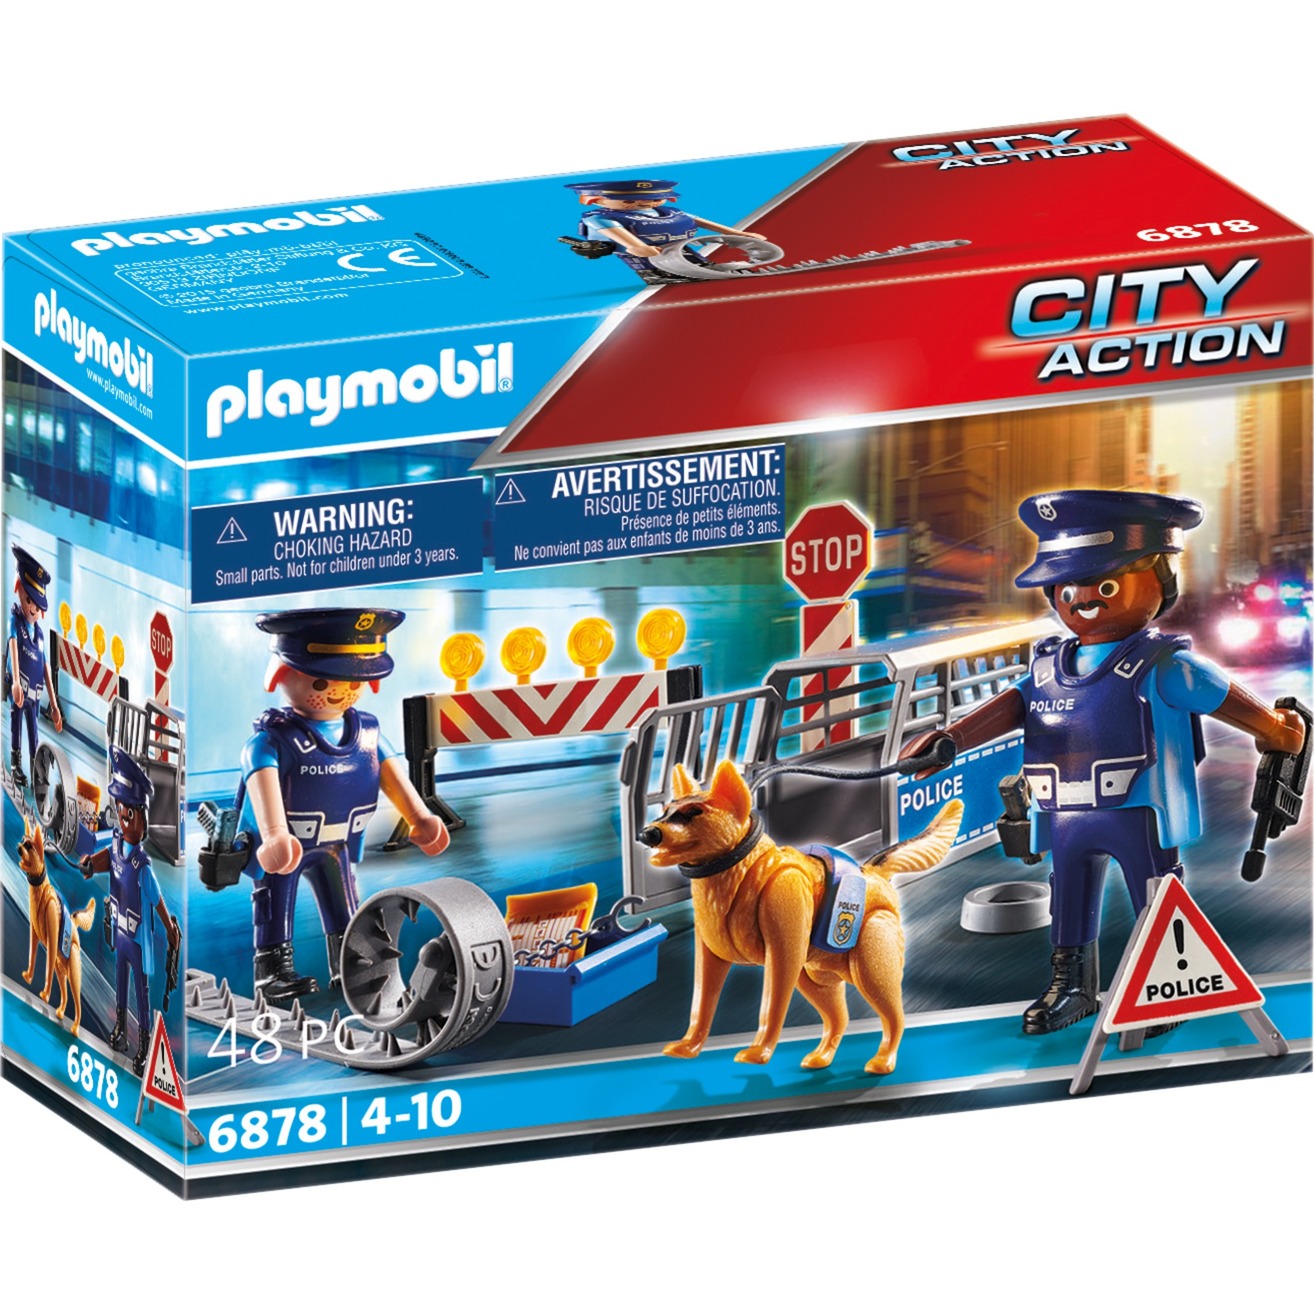 6878 City Action Polizei-Straßensperre, Konstruktionsspielzeug